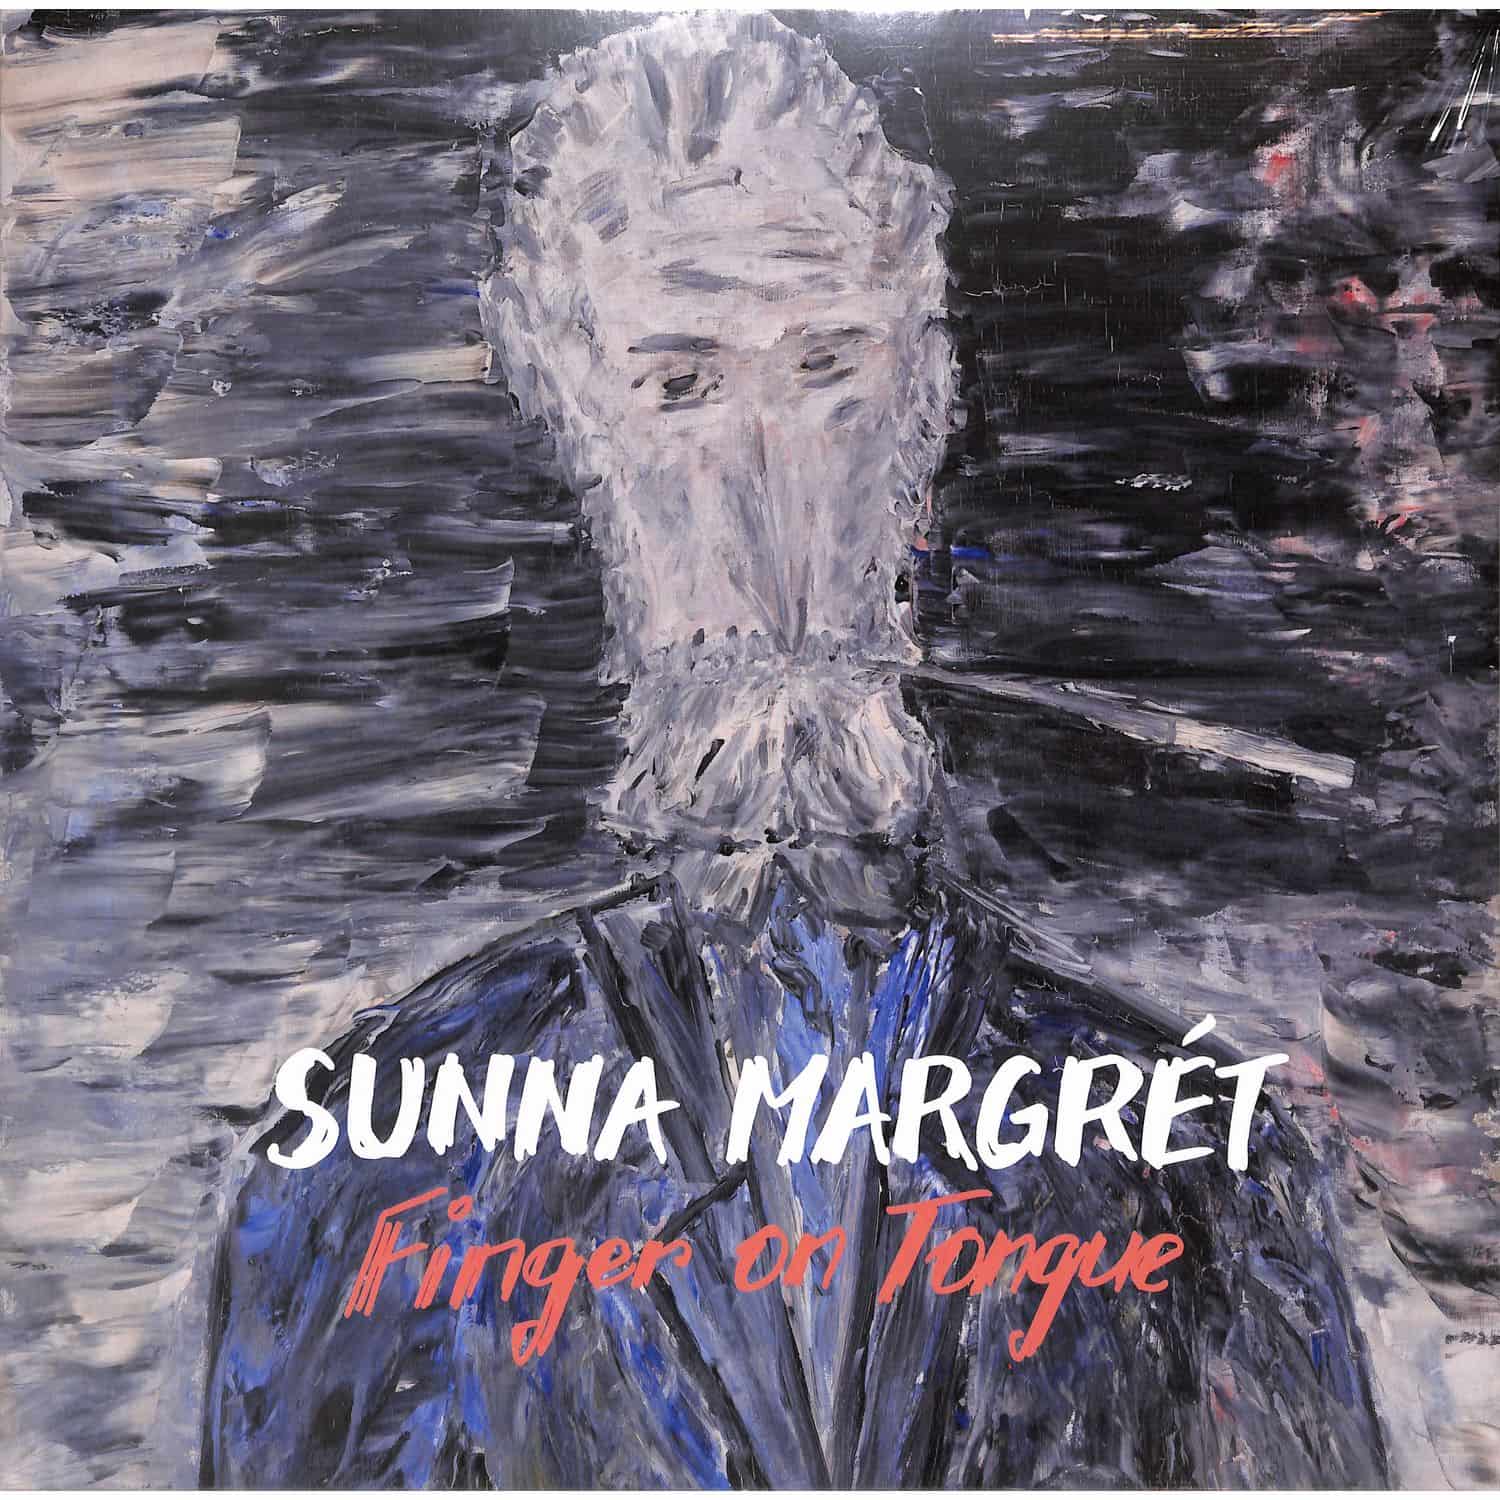 Sunna Margret - FINGER ON TONGUE 